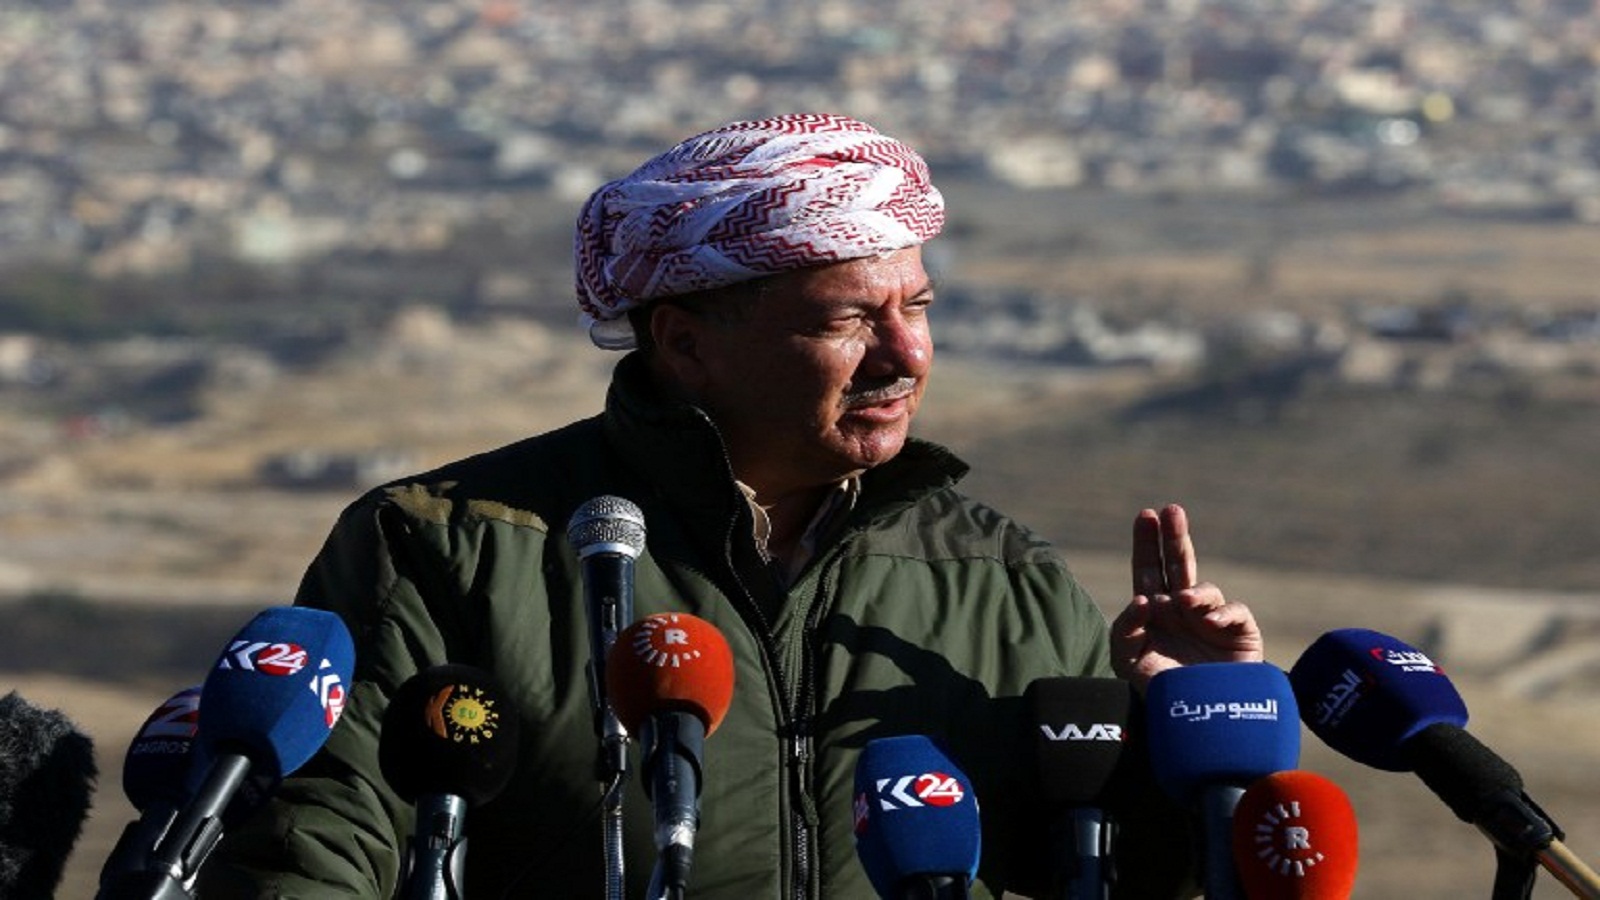 "العمال الكردستاني" يسيطر على سنجار..وبرزاني يعلن تحريرها